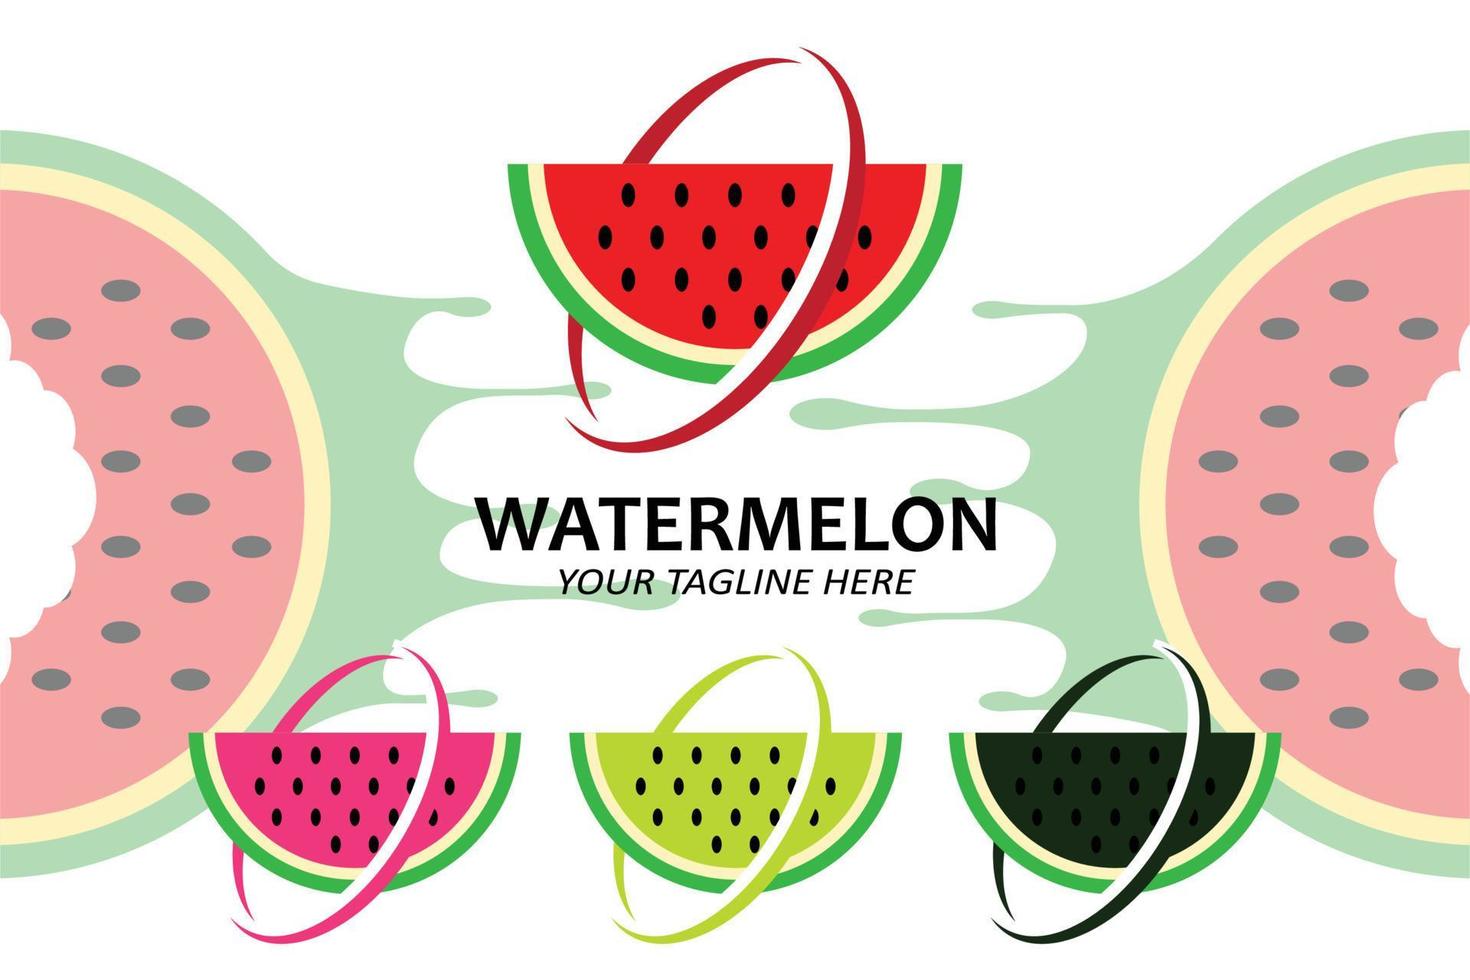 vectorillustratie van vers fruit watermeloen fruit logo rood, verkrijgbaar in de markt, zeefdrukontwerp, sticker, banner, fruitbedrijf vector